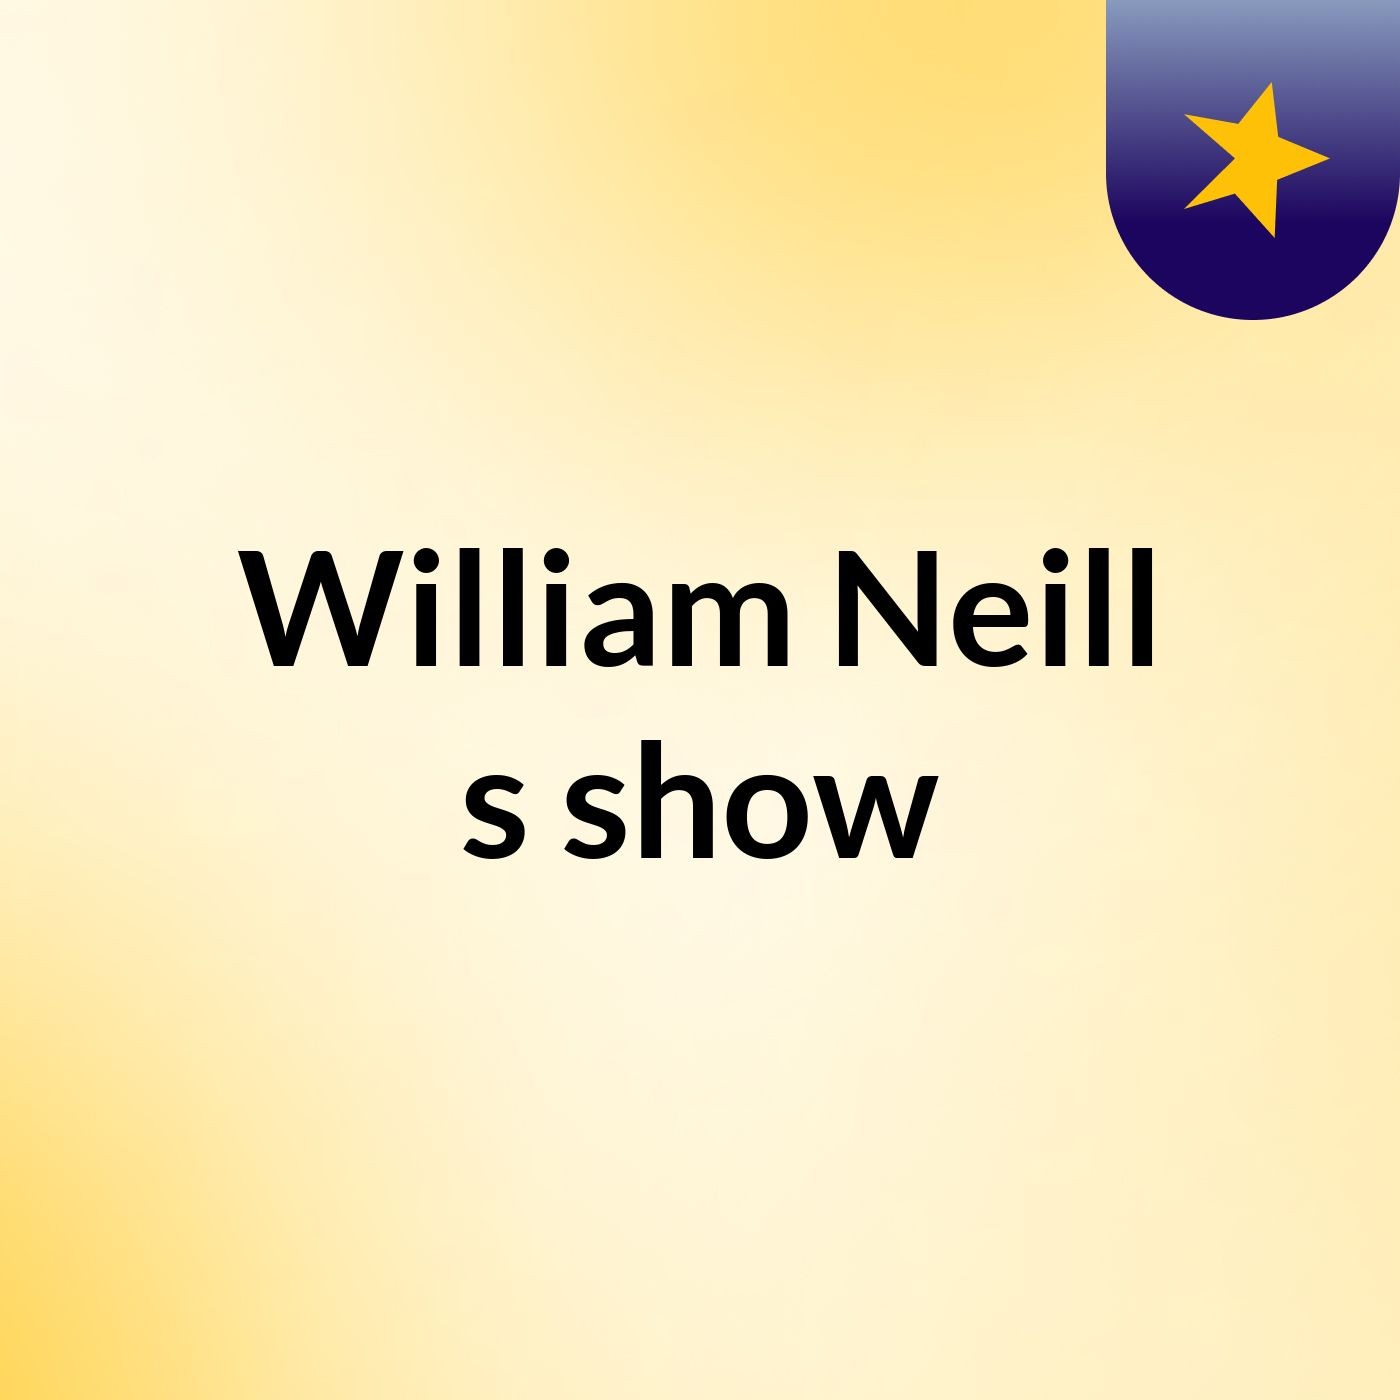 William Neill's show